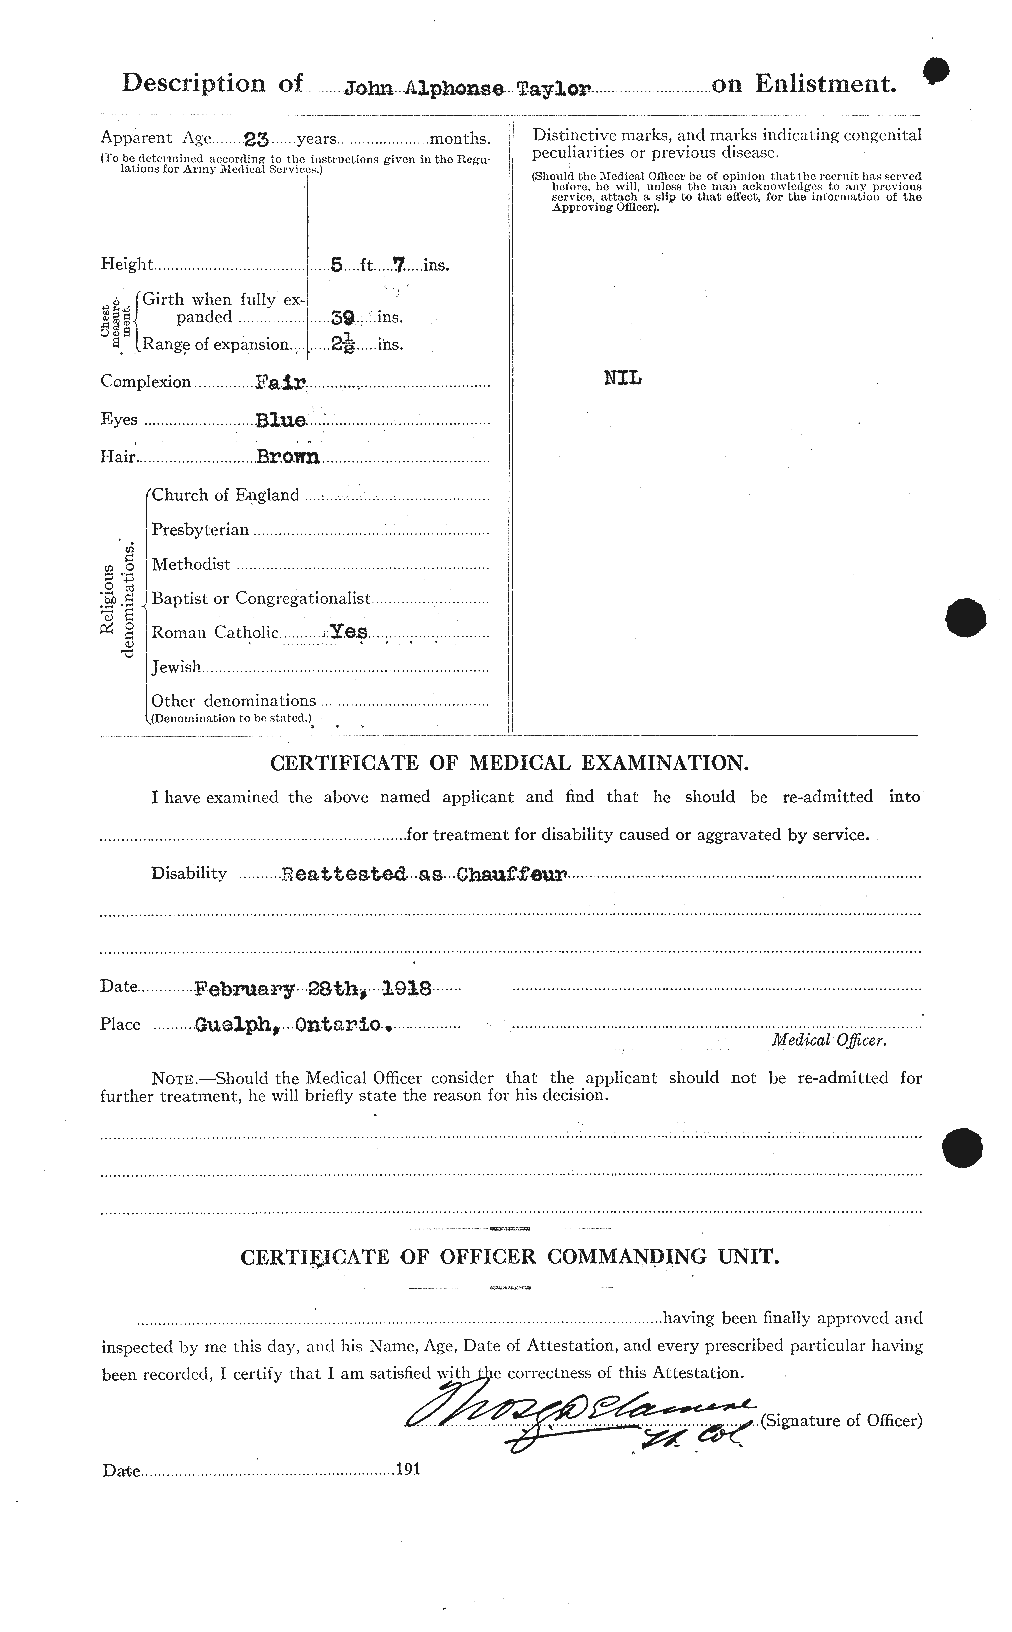 Dossiers du Personnel de la Première Guerre mondiale - CEC 627047b